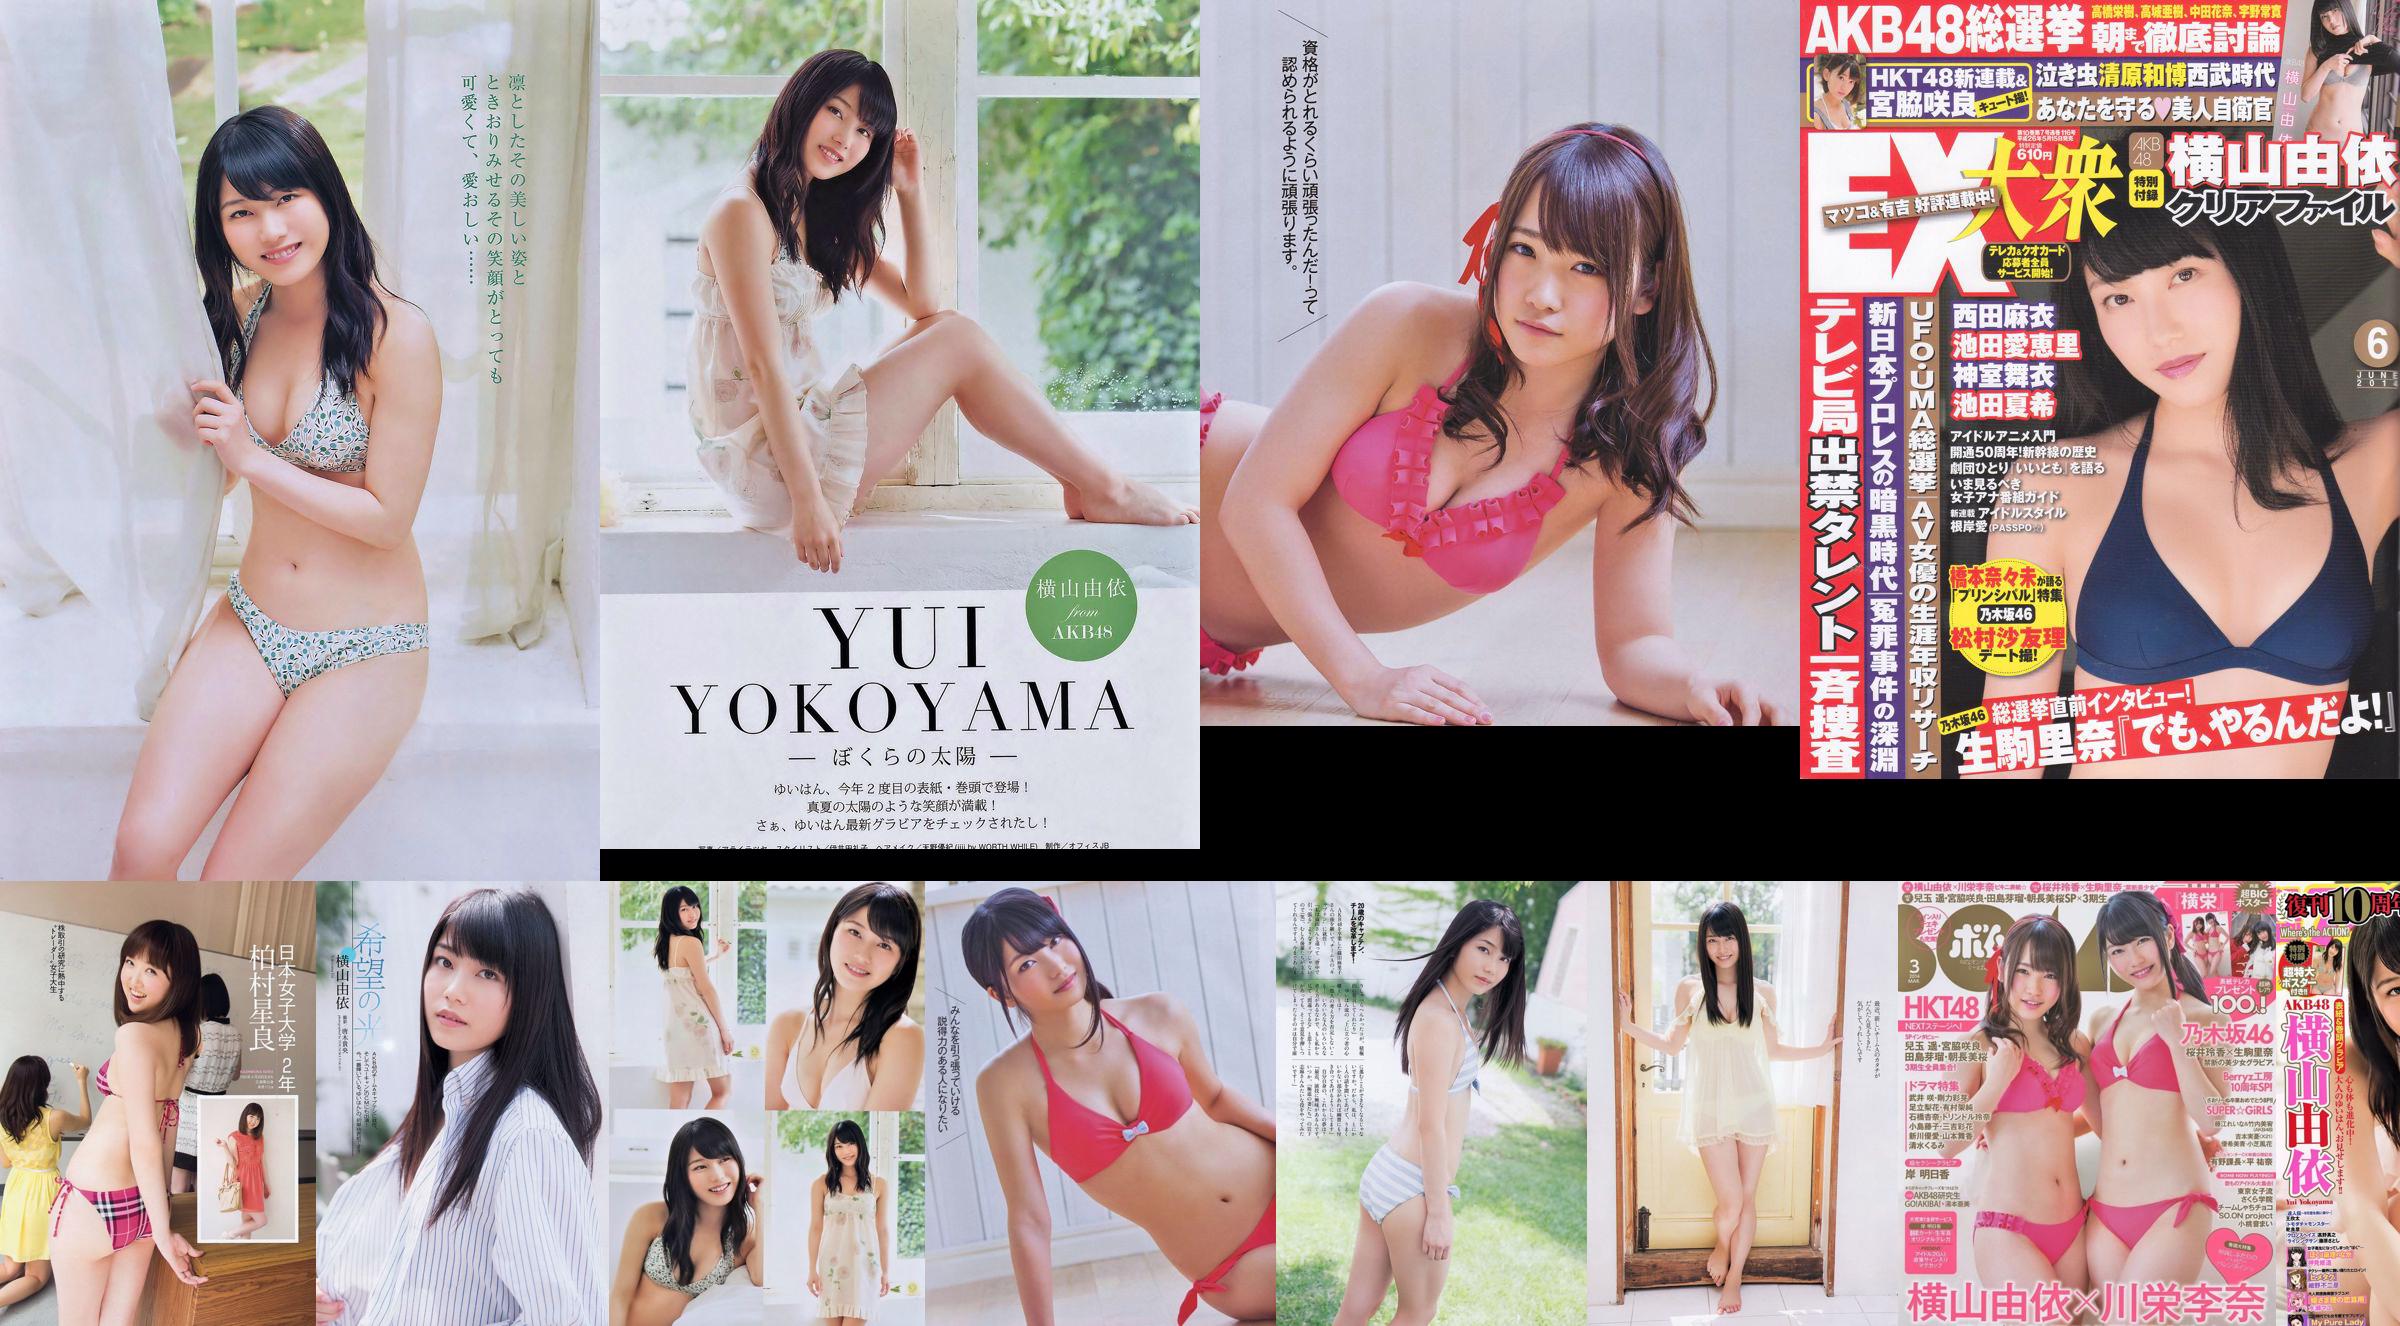 Yui Yokoyama Nozomi Sasaki Rina Koike Asuka Kuramochi Miwako Kakei Risa Yoshiki Ruri Shinato [Weekly Playboy] 2013 nr 38 Zdjęcie No.18805c Strona 7